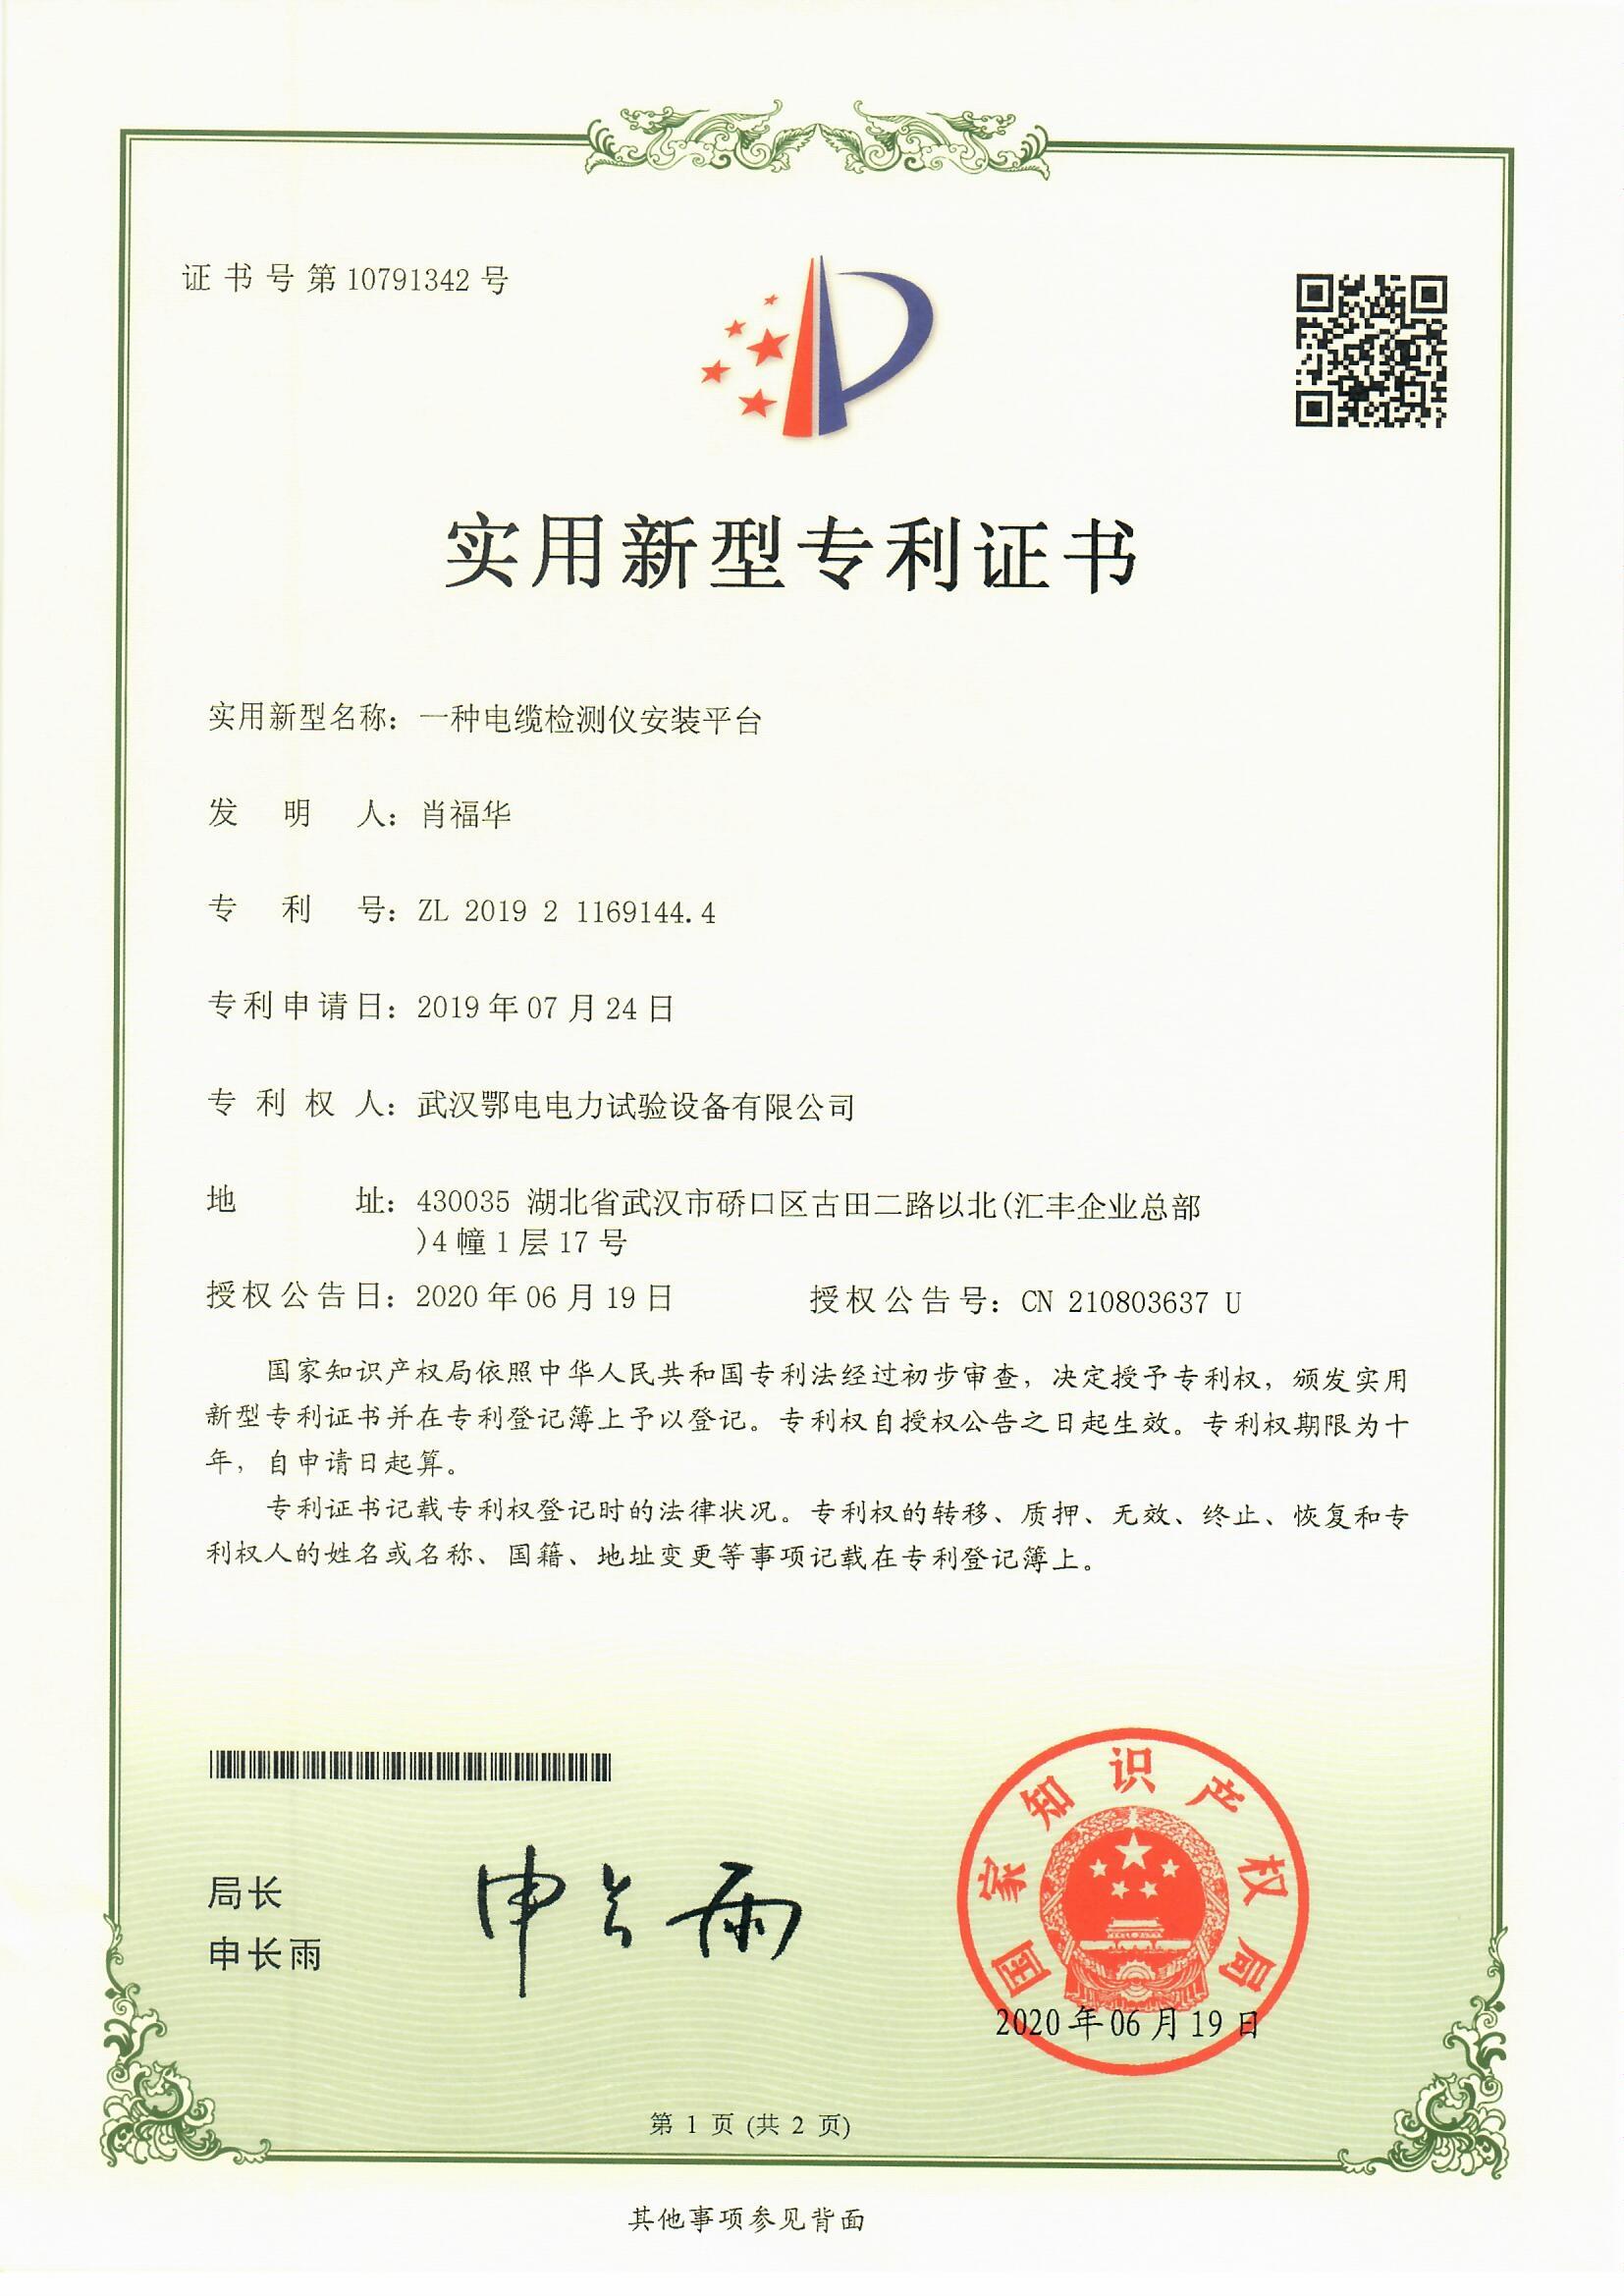 武汉鄂电电力试验设备有限公司 实用新型专利CN210803637U一种电缆检测仪安装平台